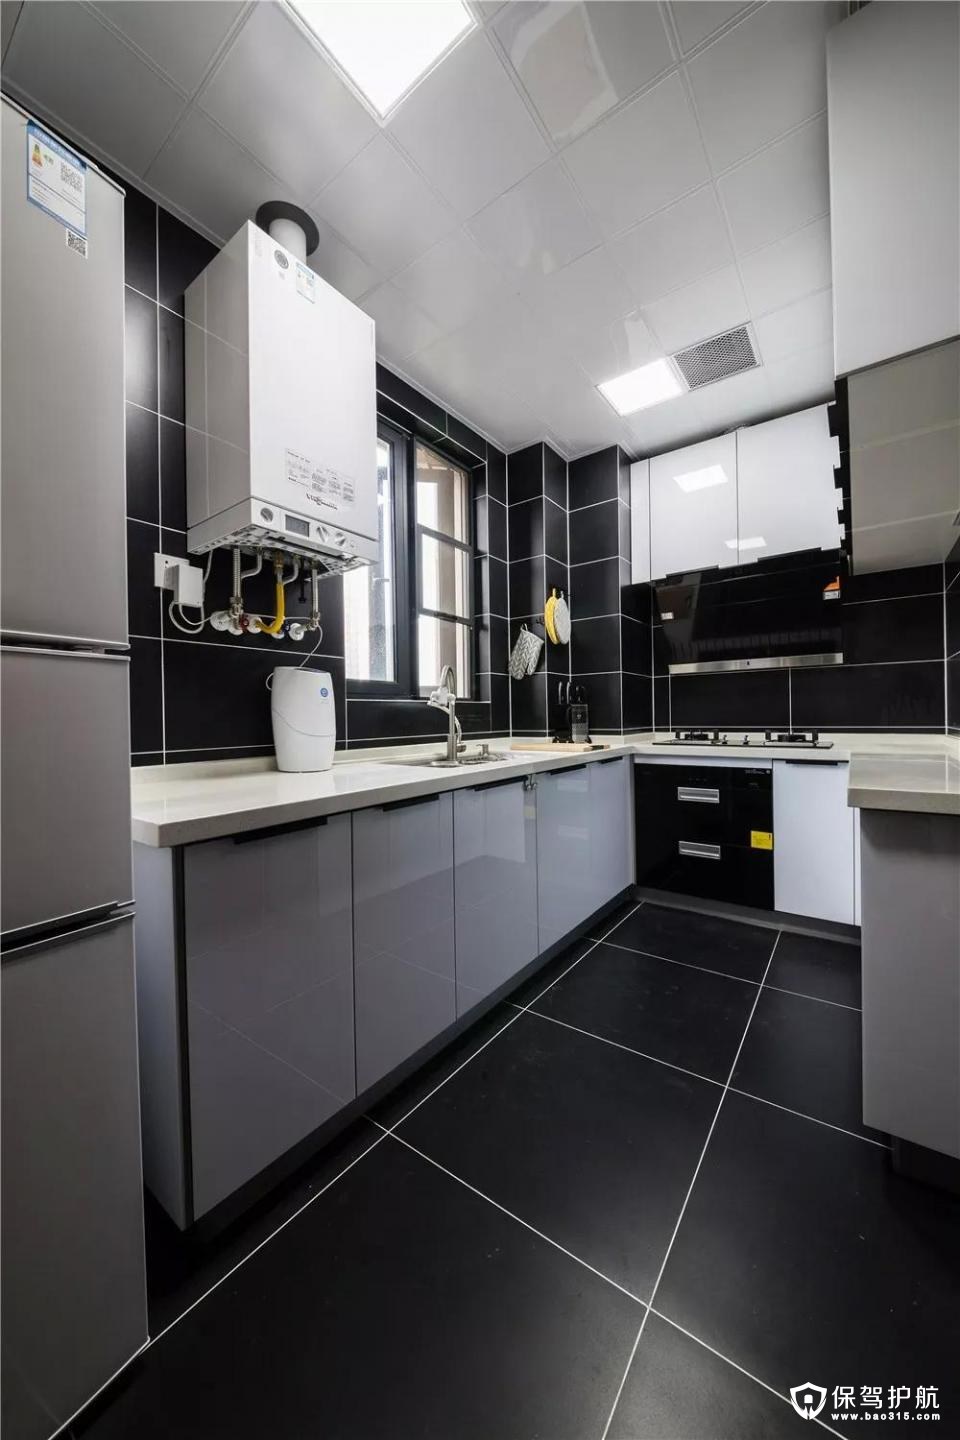 厨房选用深灰色的瓷砖和白色橱柜进行搭配，让空间层次更加的丰富。